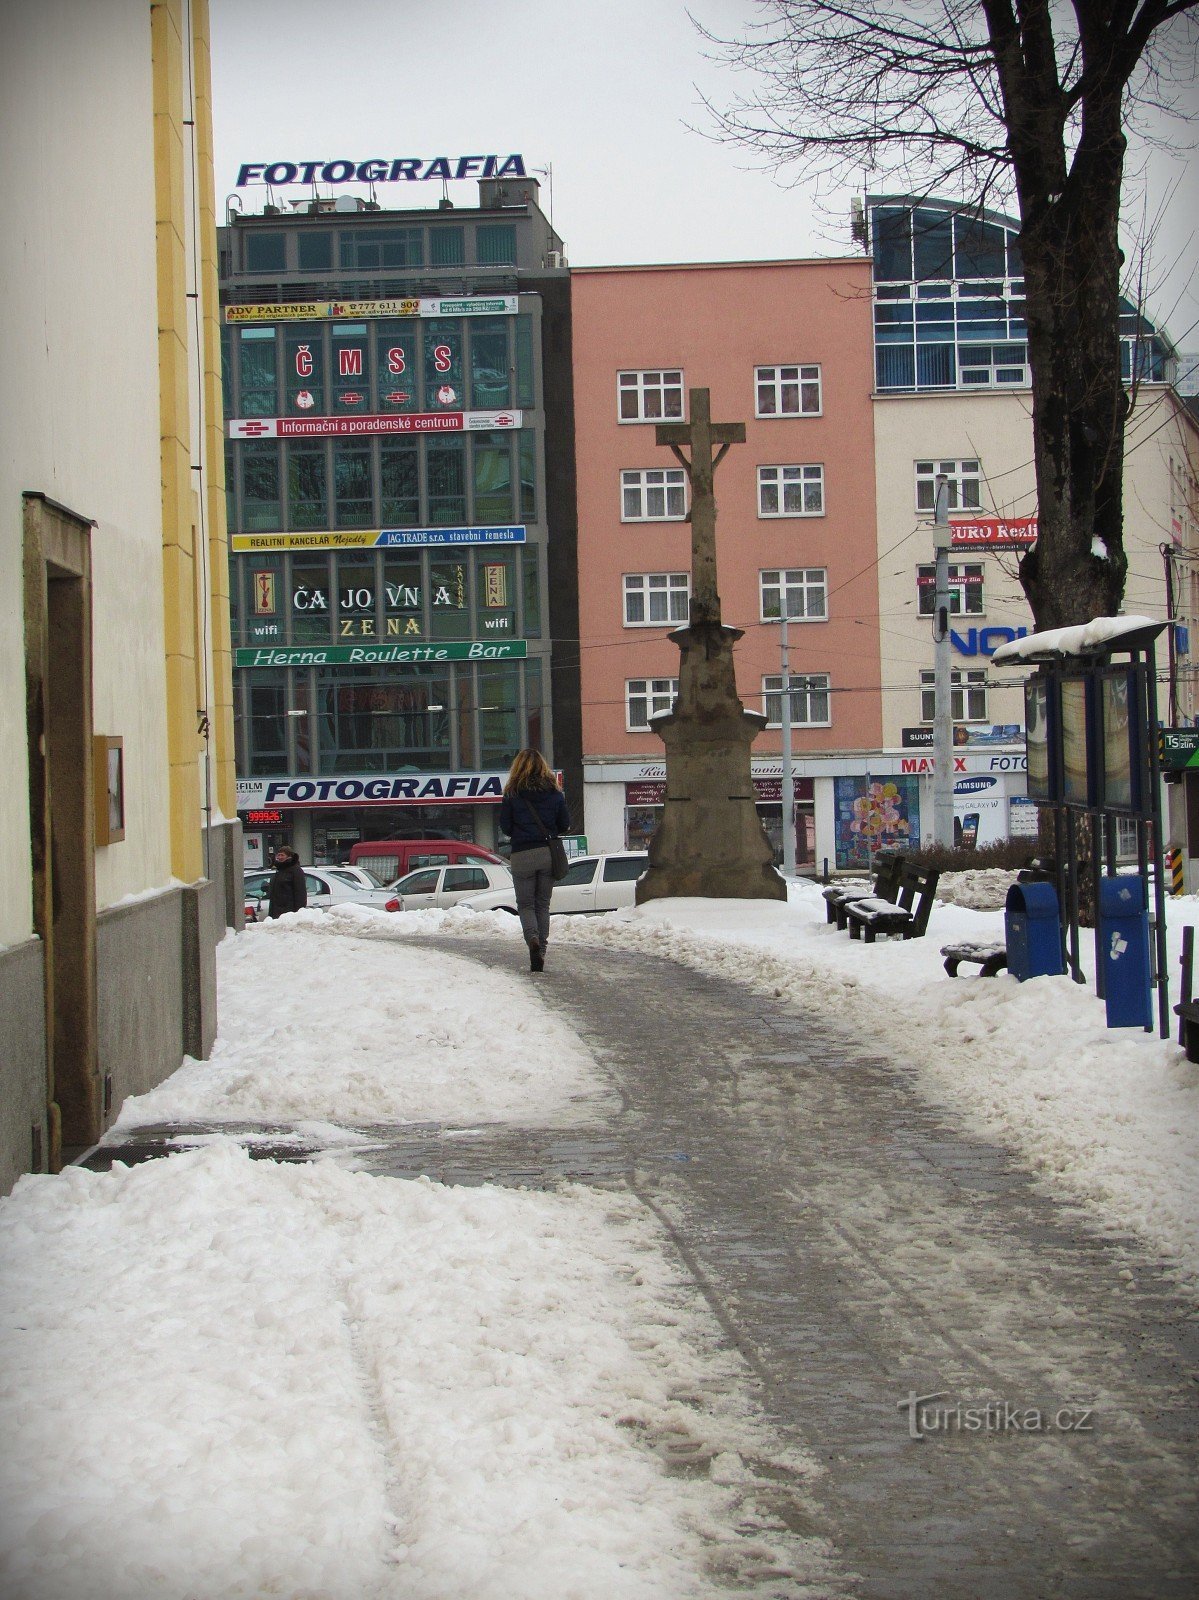 Zlín - Bâtiment photographique